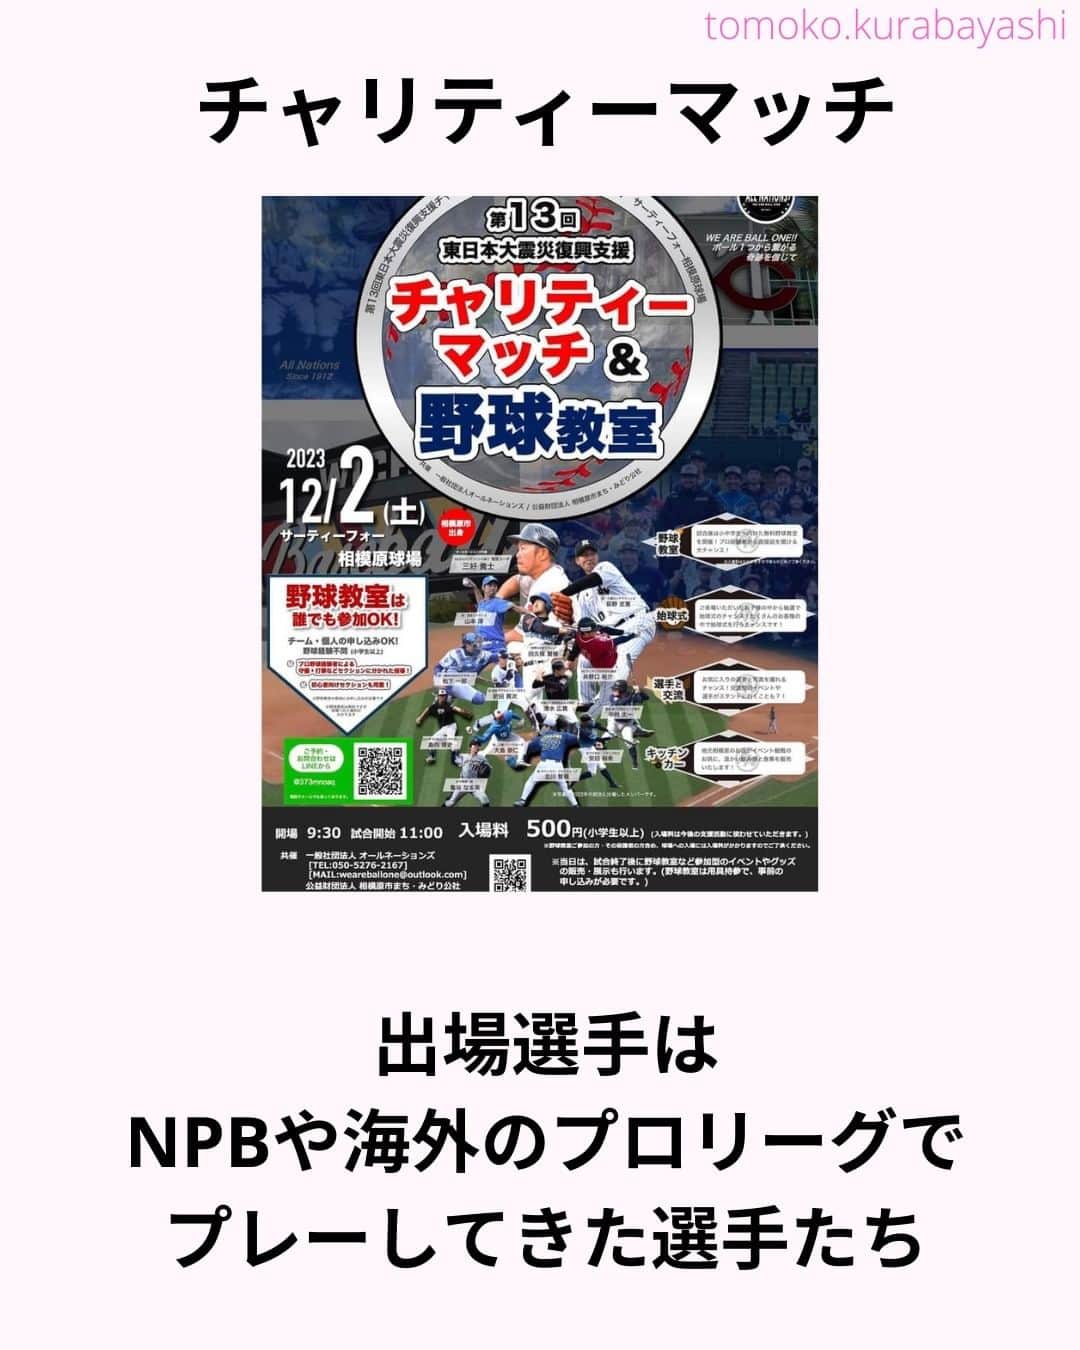 倉林知子さんのインスタグラム写真 - (倉林知子Instagram)「12月2日(土)に神奈川県のサーティーフォー相模原球場で開催される東日本大震災のチャリティーマッチでMCを務めることになりました！  大好きな野球で 東北のために仕事が出来て嬉しいです。  本日10月25日時点での出場選手やイベント内容は以下の通りです。  【ALL NATIONS BASEBALL】 ＜監督＞ ・三好貴士 (MLBミネソタツインズ傘下2Aウィチタ・ウィンドサージ)  ＜コーチ＞ ・清水広貴 (四川ドラゴンズ、和信ホエールズなど)  ＜投手＞ ・荻野忠寛 （千葉ロッテマリーンズ） ・山本淳 (埼玉西武ライオンズ) ・北川智規 (オリックスブルーウェーブ) ・島内博史 (トロワリヴィエール・セインツ) ・大島崇仁 (神戸ナインクルーズ、三重スリーアローズなど)  ＜捕手＞ ・松下一郎 (横浜DeNAベイスターズ)  ＜内野手＞ ・肥田貢次 (群馬ダイヤモンドペガサス) ※キャプテン ・安田裕希 (ロンドン・メジャー、サザンメリーランド・ブルークラブスなど) ・中村太一 (ロズウェル・インベーダーズ、アルパイン・カウボーイズなど)  ＜外野手＞ ・井野口祐介 (群馬ダイヤモンドペガサス、スーシティー・エクスプローラーズなど) ・田久保賢植 (フロッシブルノ、コリアへチなど) ・前沢力 (東京ユニコーン)  【ALL NATIONS FRIENDS】 ＜投手＞ ・大高歩 (香川オリーブガイナーズ、神奈川フューチャードリームス) ・小林 亜由良 (宮崎サンシャインズ、徳島インディゴソックス) ・高木結大 (武蔵ヒートベアーズ) ・吉岡豊司 (信濃グランセローズ、群馬ダイヤモンドペガサス) ・林考澄 (横浜球友クラブ) ・合田達矢  ＜内野手＞ ・土屋剛 (大分Bリングス、信濃グランセローズ) ・宮崎卓理 (信濃グランセローズ)  ＜外野手＞ ・平岩直人 (信濃グランセローズ) ・廣井利光 (兵庫ブレイバーズ) ・荒井健太郎 (横浜球友クラブ) ・守谷慶太郎 (横浜球友クラブ) (順不同)  【イベント内容】 ・当時被災された地域への募金活動 ・プロ経験者、海外プロ経験者などの真剣試合 (最大7イニング予定) ・出場メンバーが教えるチャリティー野球教室 ・キッチンカーによる飲食販売 ・一般の方も試合に出場できるチケット販売中 → 『投手枠』、『打者枠』  【後援】 相模原市  【共催】 公益財団法人 相模原市まち・みどり公社、一般社団法人オールネーションズ  最新情報は、こちらにアップデートされます： https://anbb2011.com/2023/10/12/%e3%80%9010-12%e6%9b%b4%e6%96%b0%e3%80%91%e7%ac%ac13%e5%9b%9e%e6%9d%b1%e6%97%a5%e6%9c%ac%e5%a4%a7%e9%9c%87%e7%81%bd%e5%be%a9%e8%88%88%e6%94%af%e6%8f%b4%e3%83%81%e3%83%a3%e3%83%aa%e3%83%86%e3%82%a3/  ぜひ球場に足を運んでください！」10月25日 15時17分 - tomoko.kurabayashi